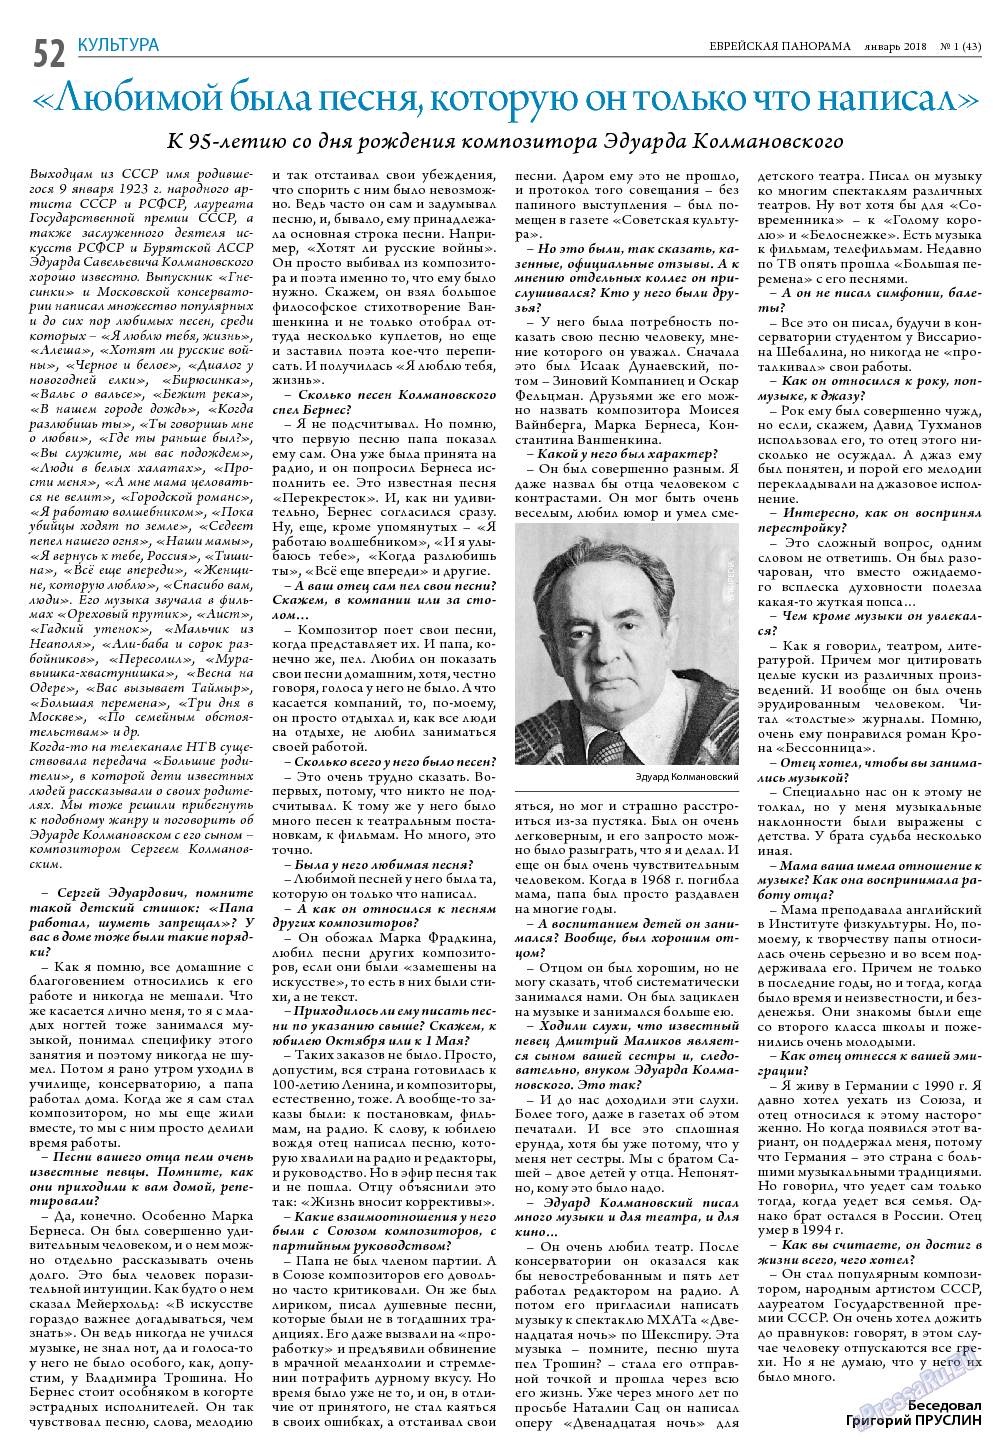 Еврейская панорама (газета). 2018 год, номер 1, стр. 52